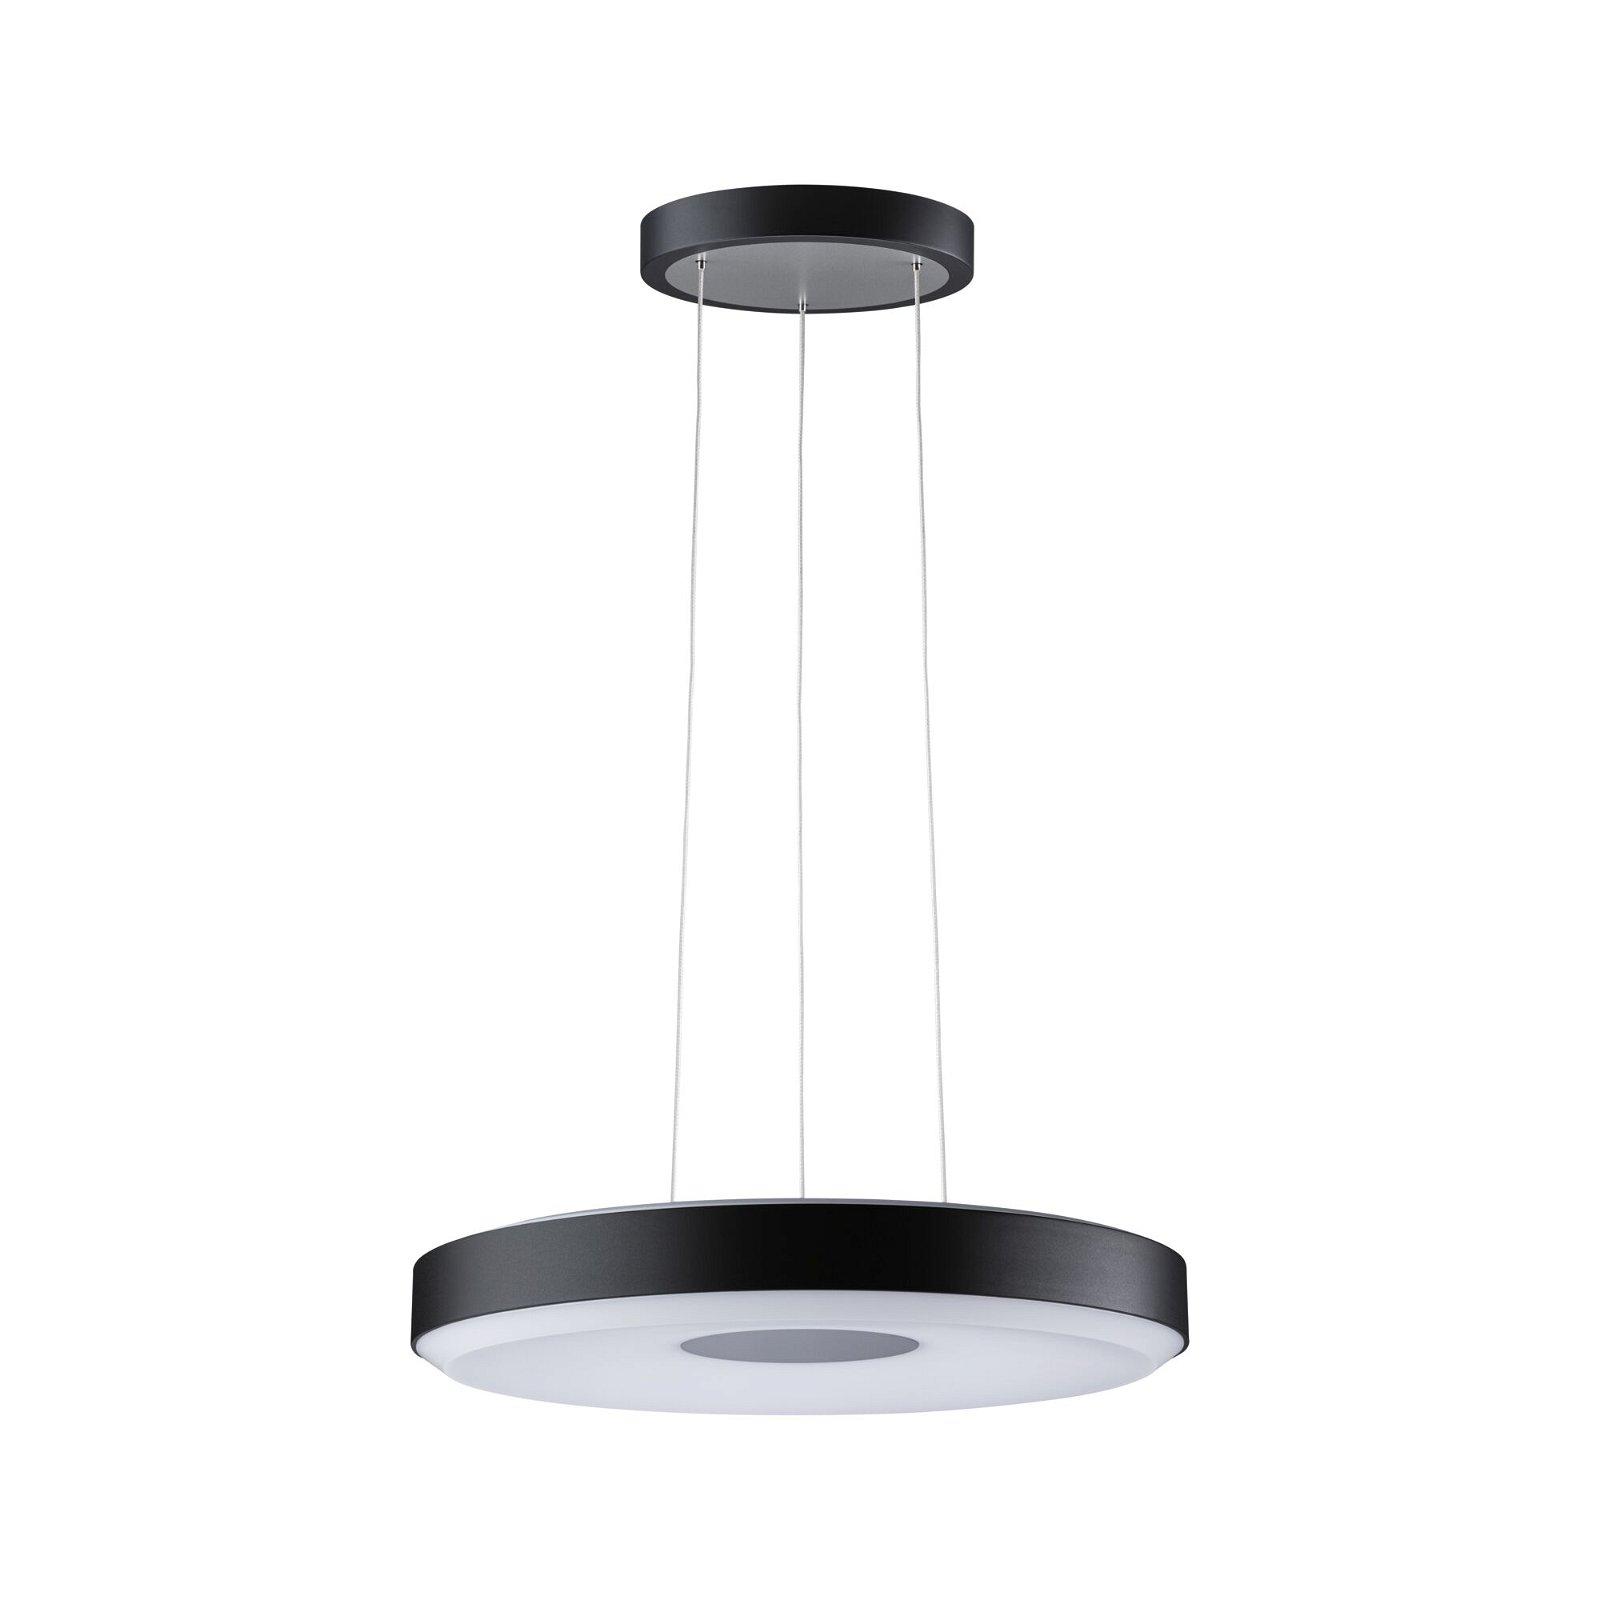 LED závěsné svítidlo Smart Home Zigbee Puric Pane 2700K / 11 / 1x7W černá/šedá stmívatelné - PAULMANN